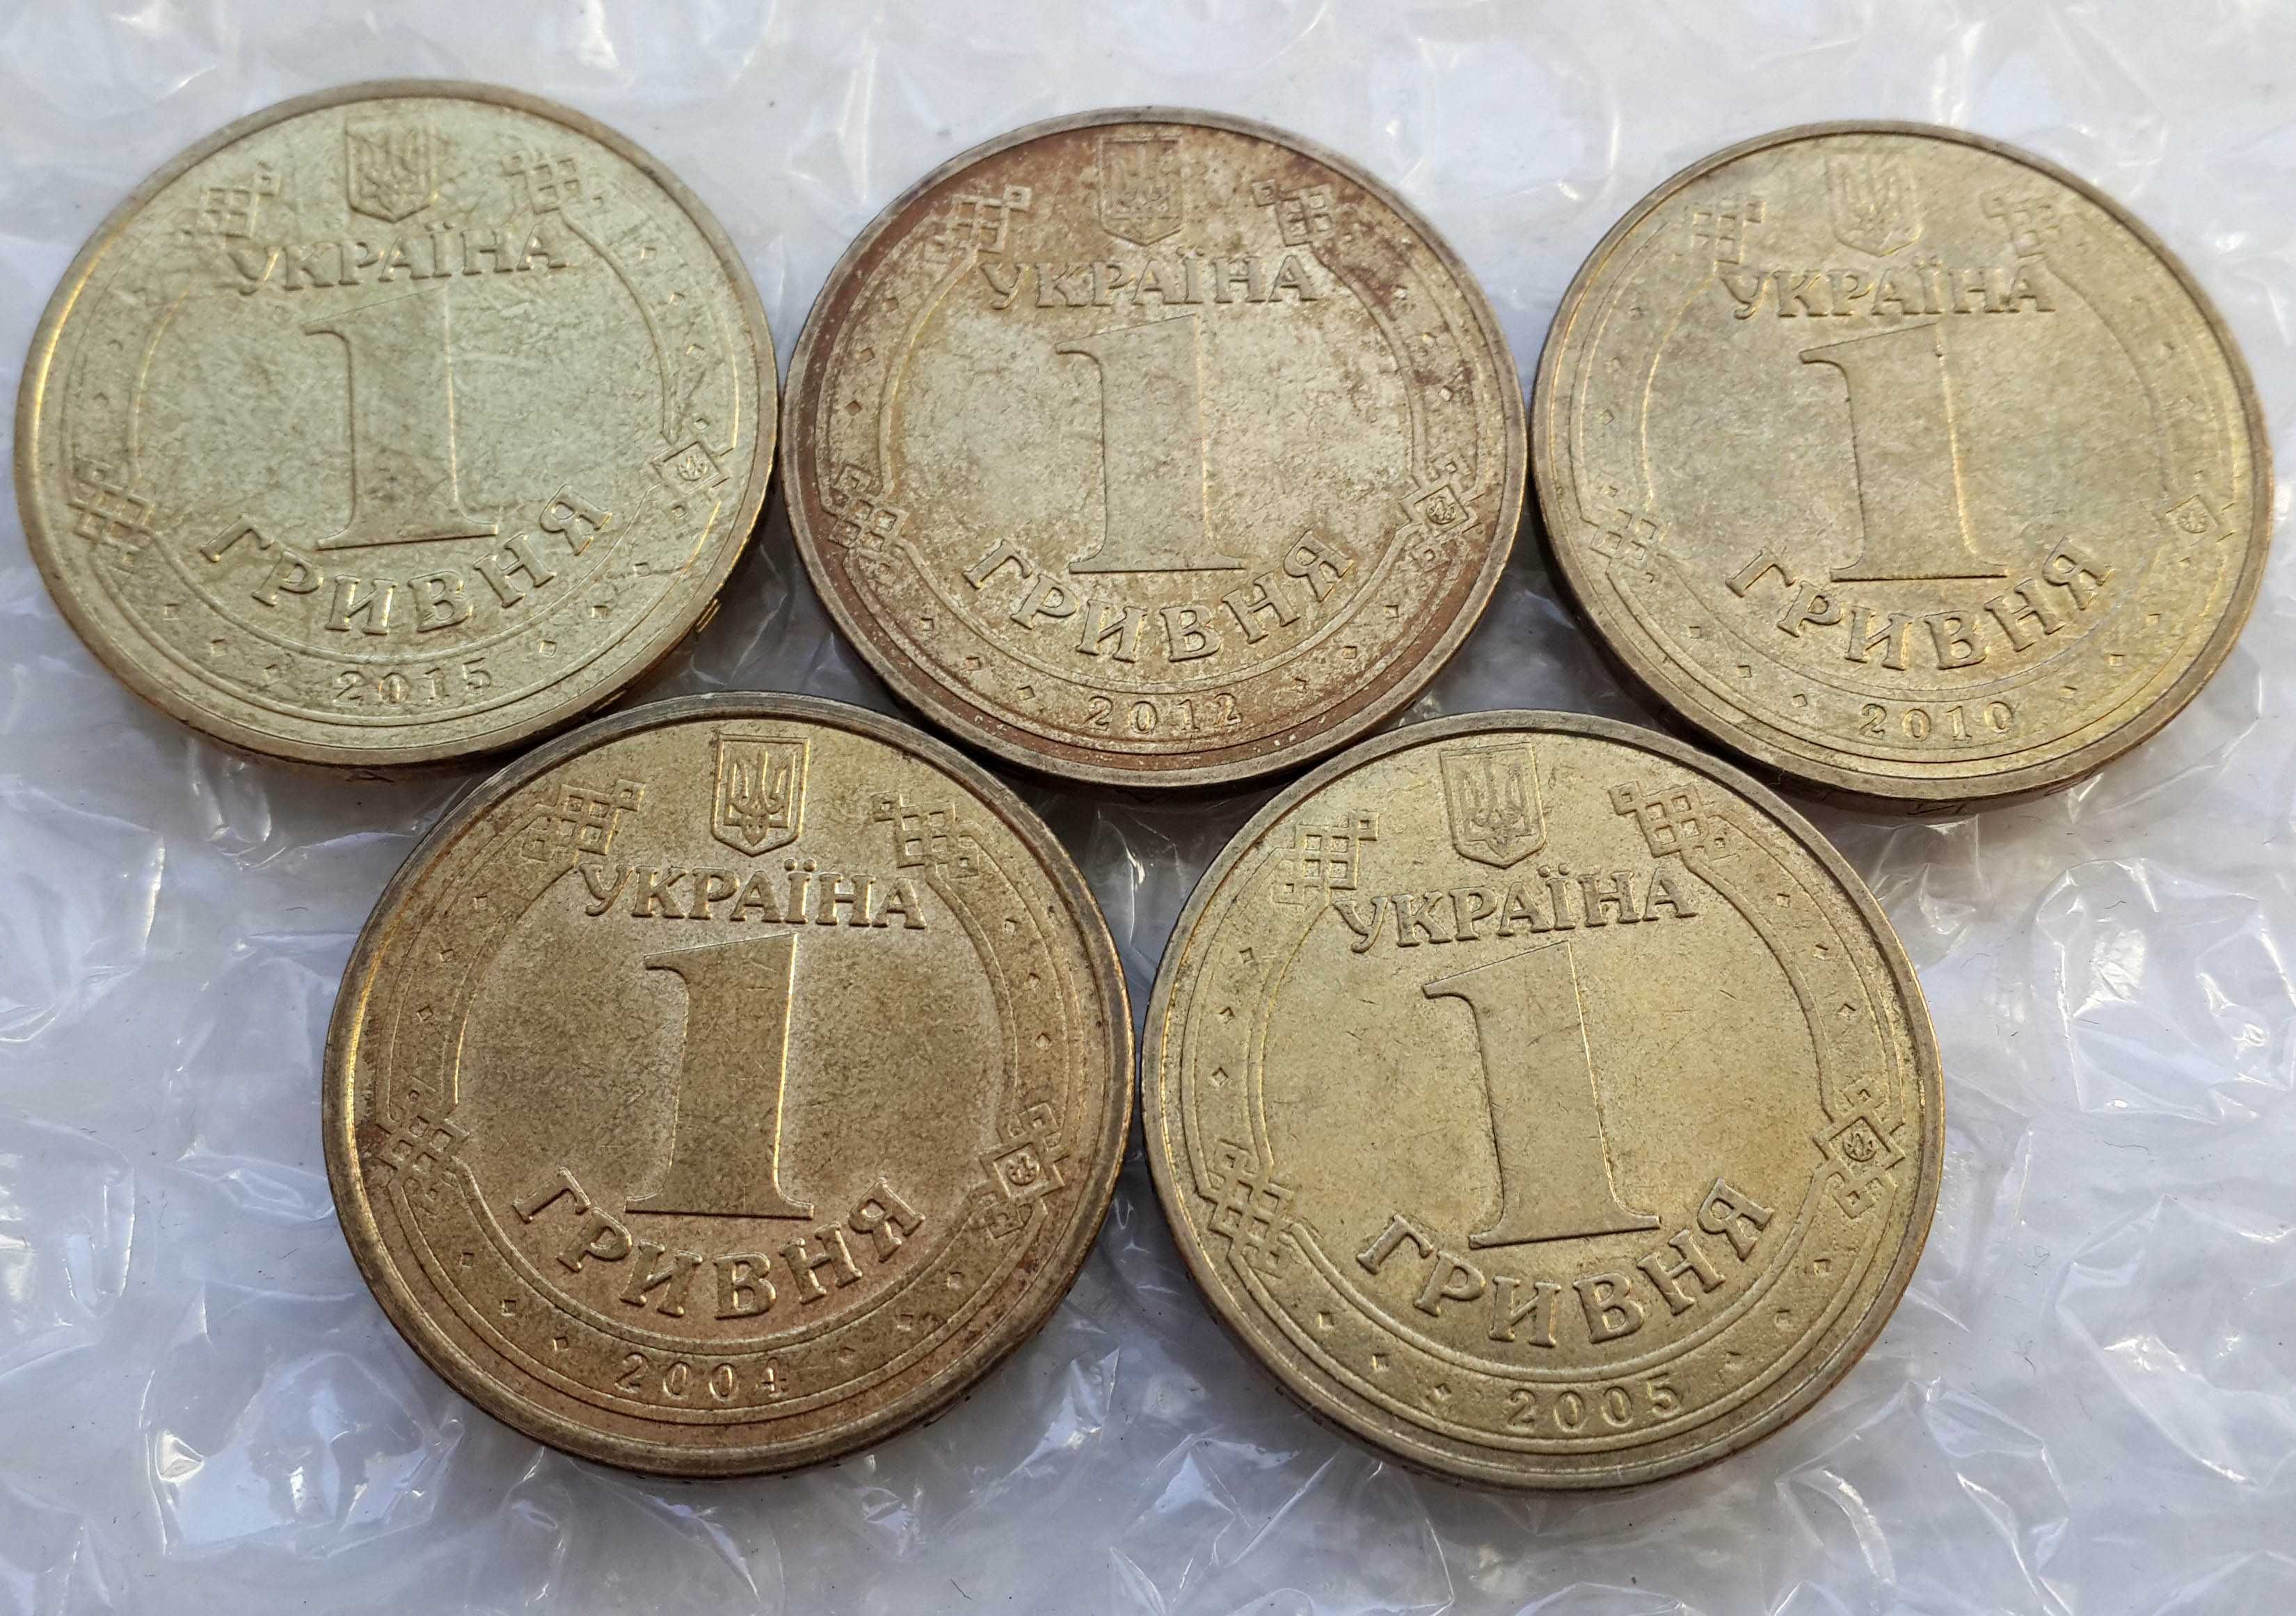 Юбилейные монеты номиналом 1 гривна: 2004, 2005, 2010, 2012, 2015 гг.